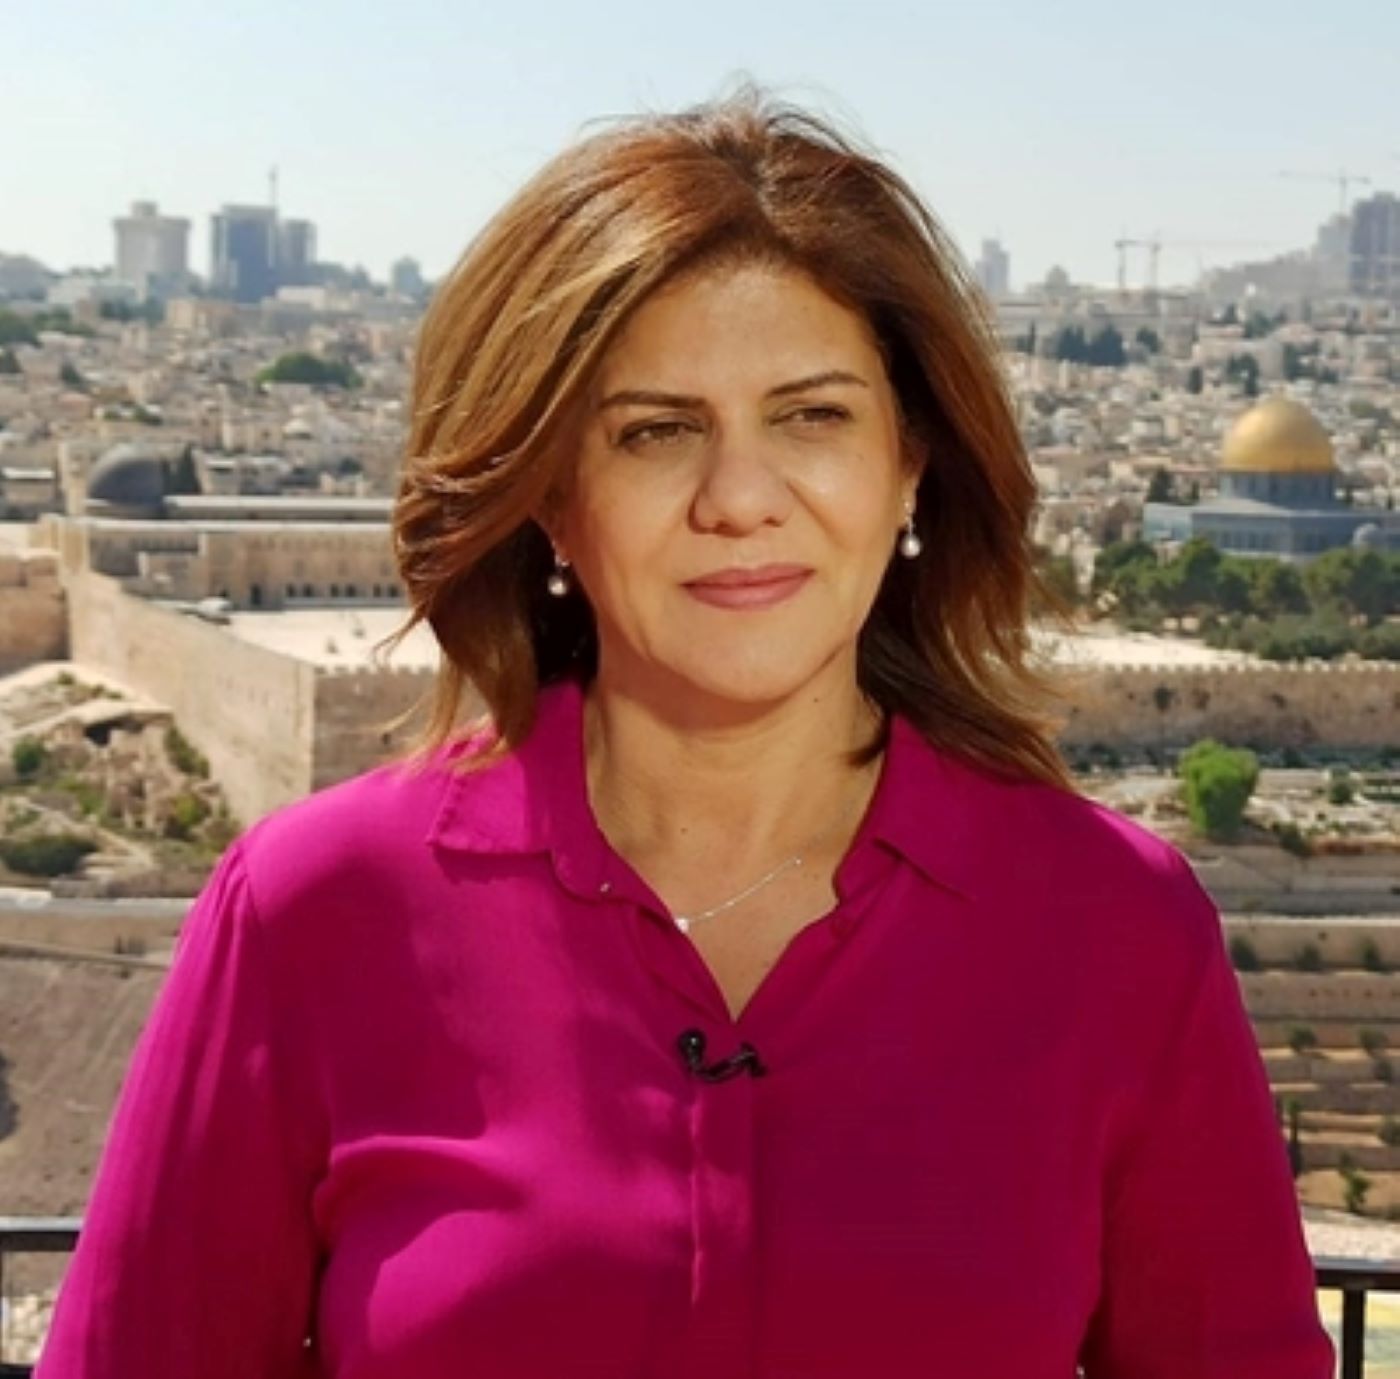 Muere de un tiro una periodista de Al Jazeera en una redada del ejército israelí